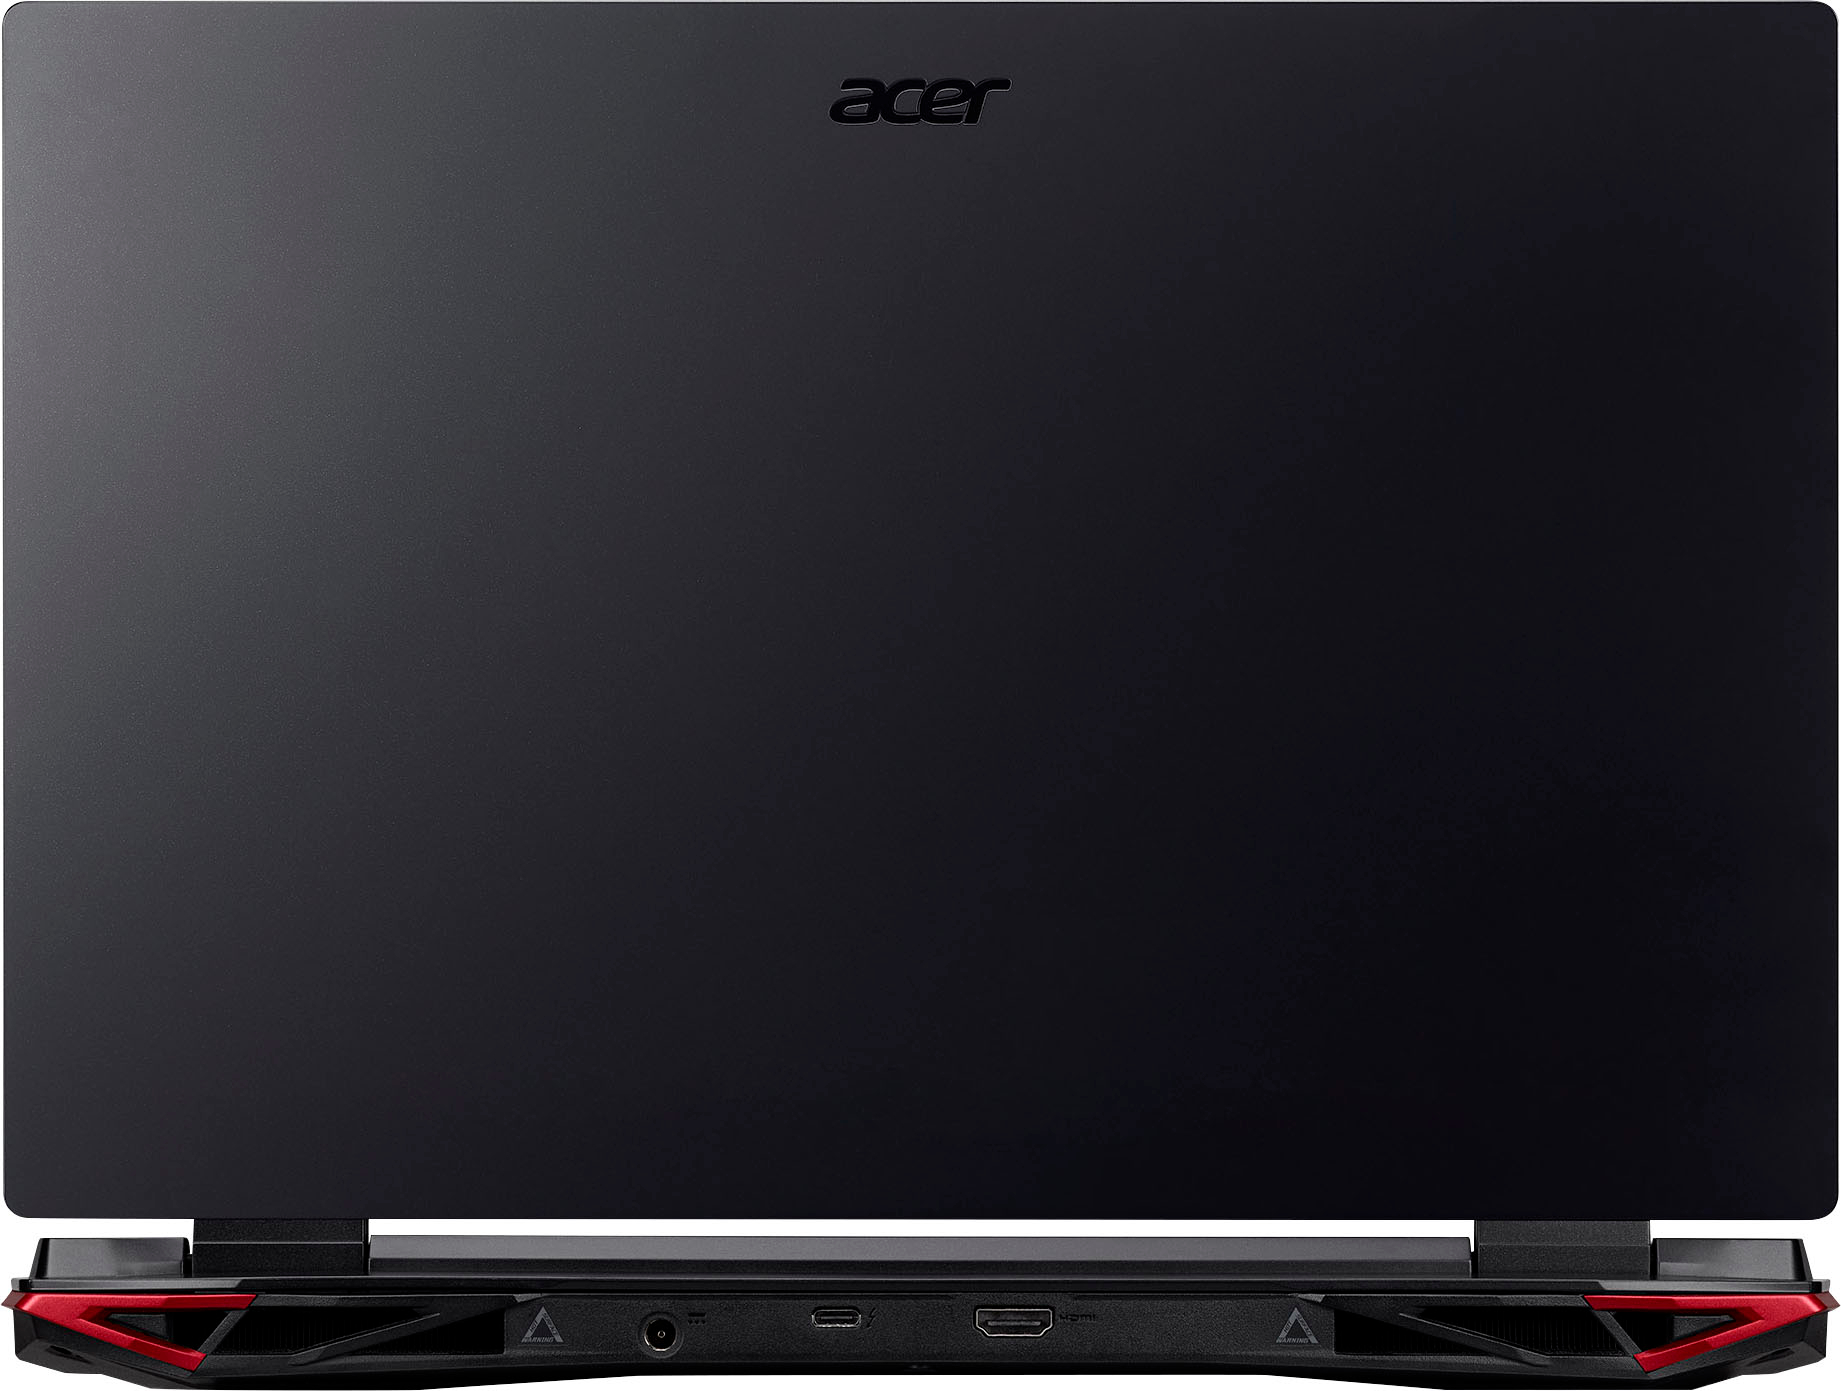 Acer Nitro 5 15.6 FHD Gaming Laptop, Intel Core i5, 8GB RAM, GF GTX 1650,  256GB SSD, Windows 10, Obsidian Black, AN515-55-53AG 